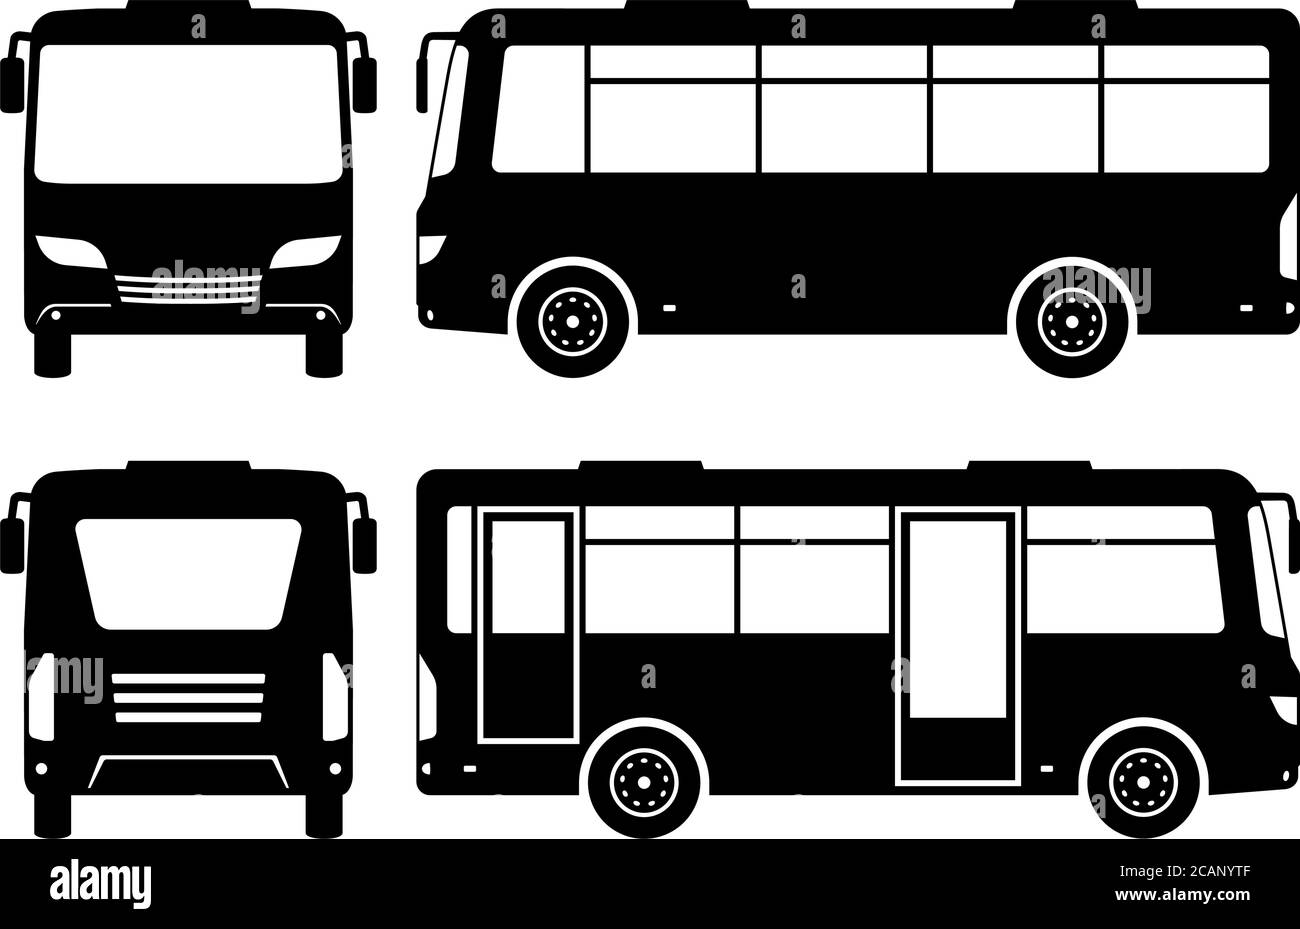 Petite silhouette de bus sur fond blanc. Les icônes de véhicule définissent la vue latérale, avant et arrière Illustration de Vecteur